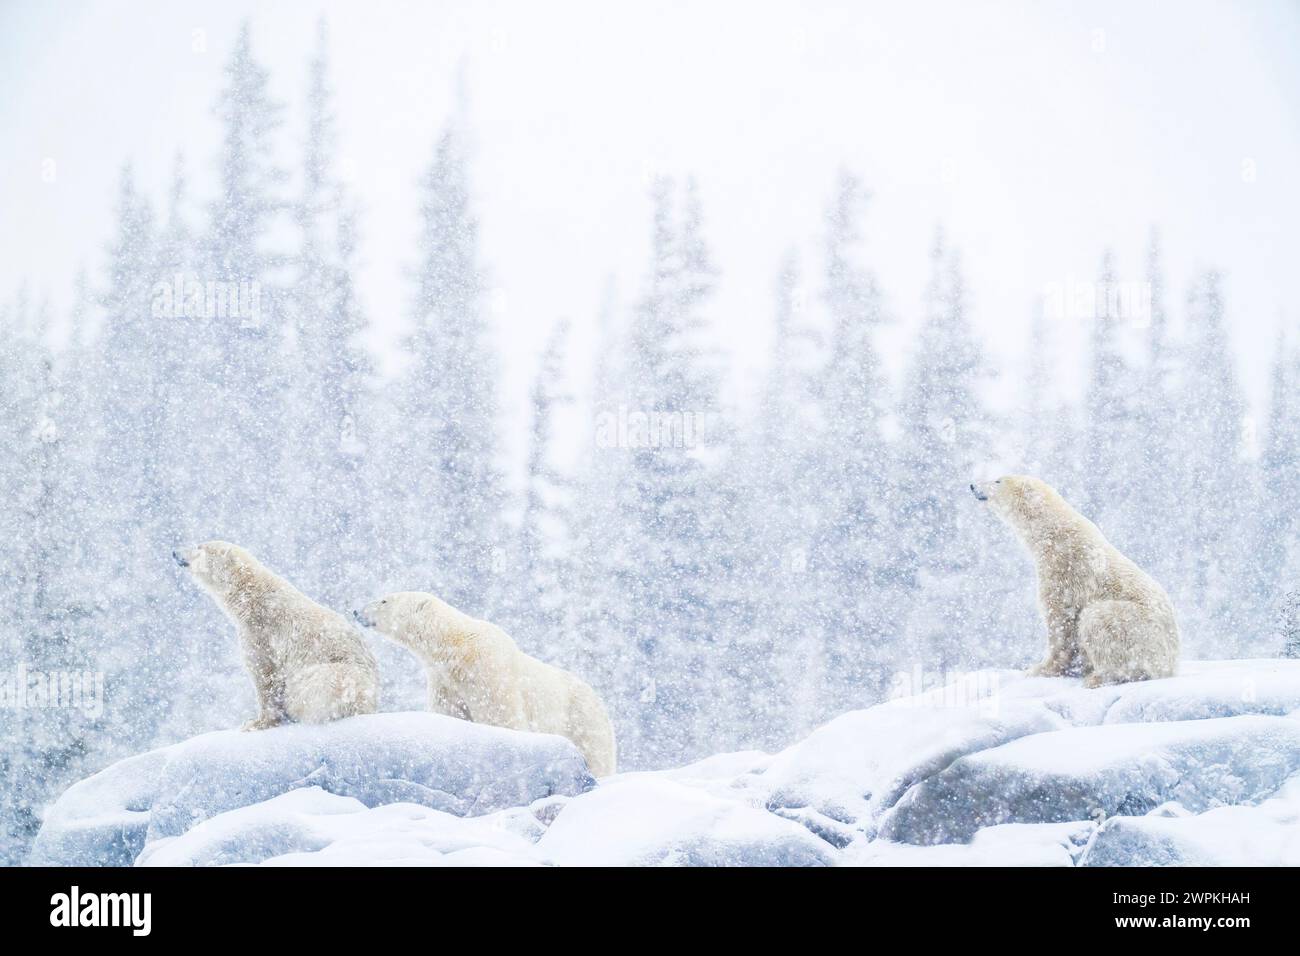 Arrêtez-vous et profitez de la vue CANADA ADORABLES images de deux ours polaires qui se battent ensemble vous feront rire. Environ deux ans, th Banque D'Images